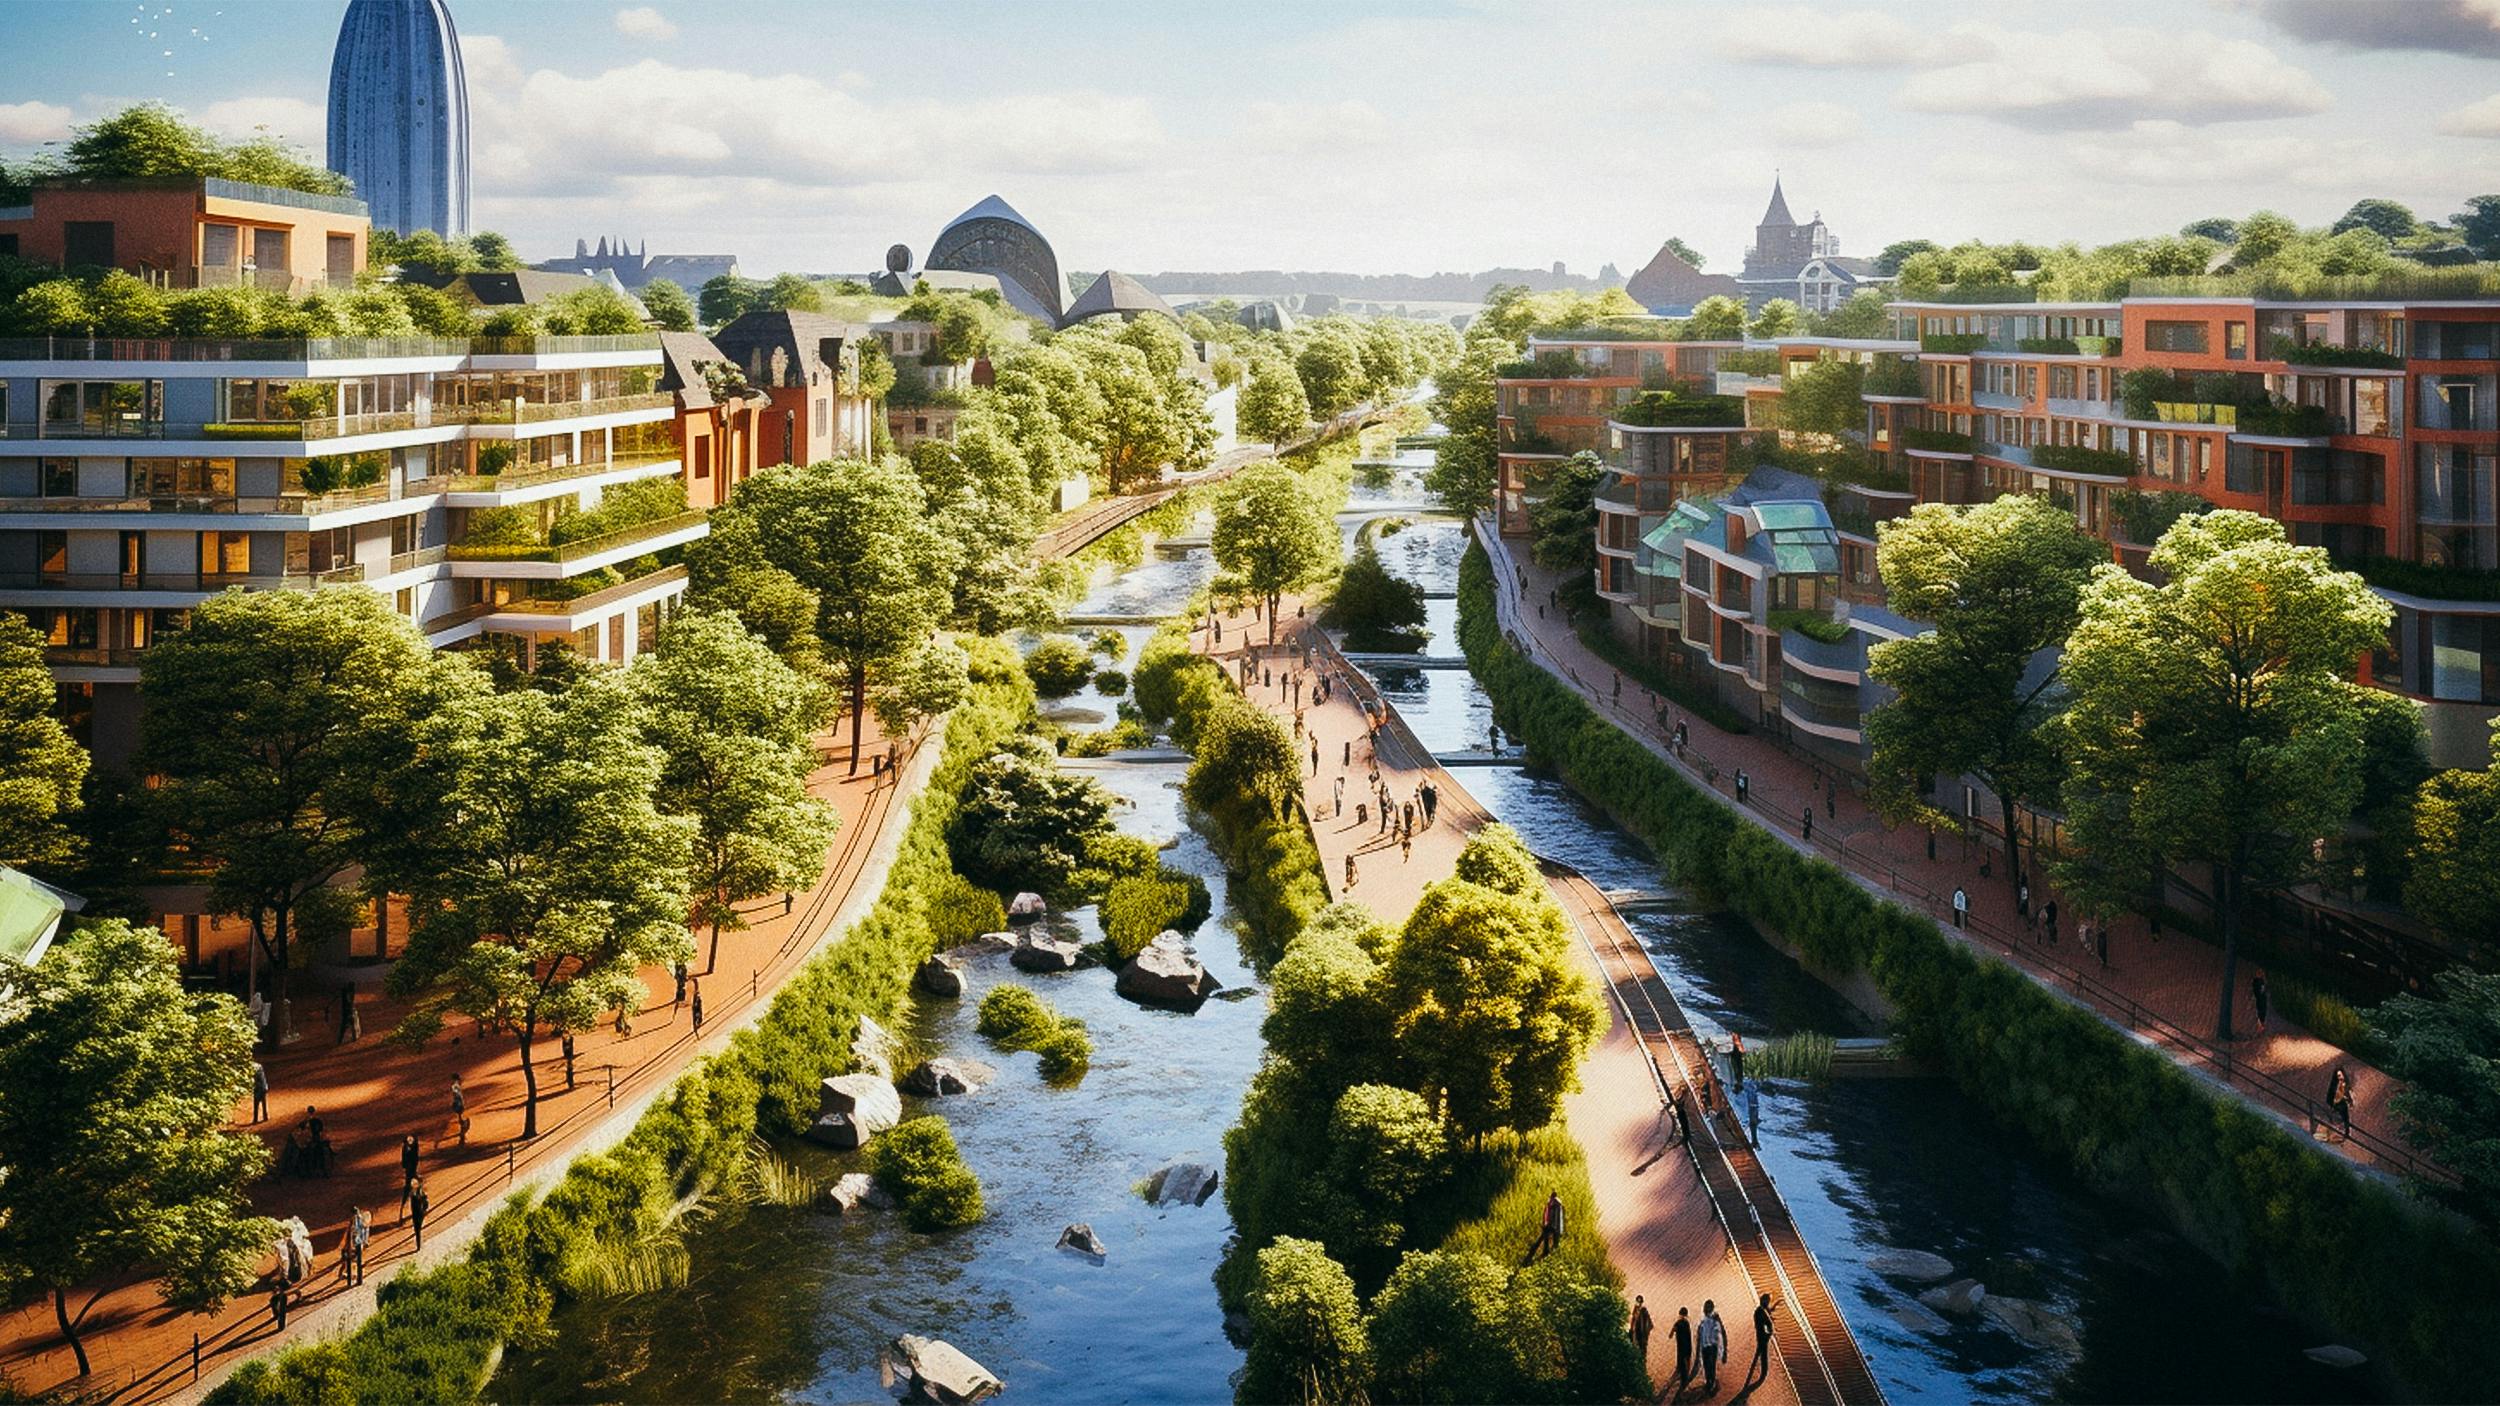 Auf dem Bild sieht man eine Stadt mit einem Fluss, die modern aussieht und sehr grün ist